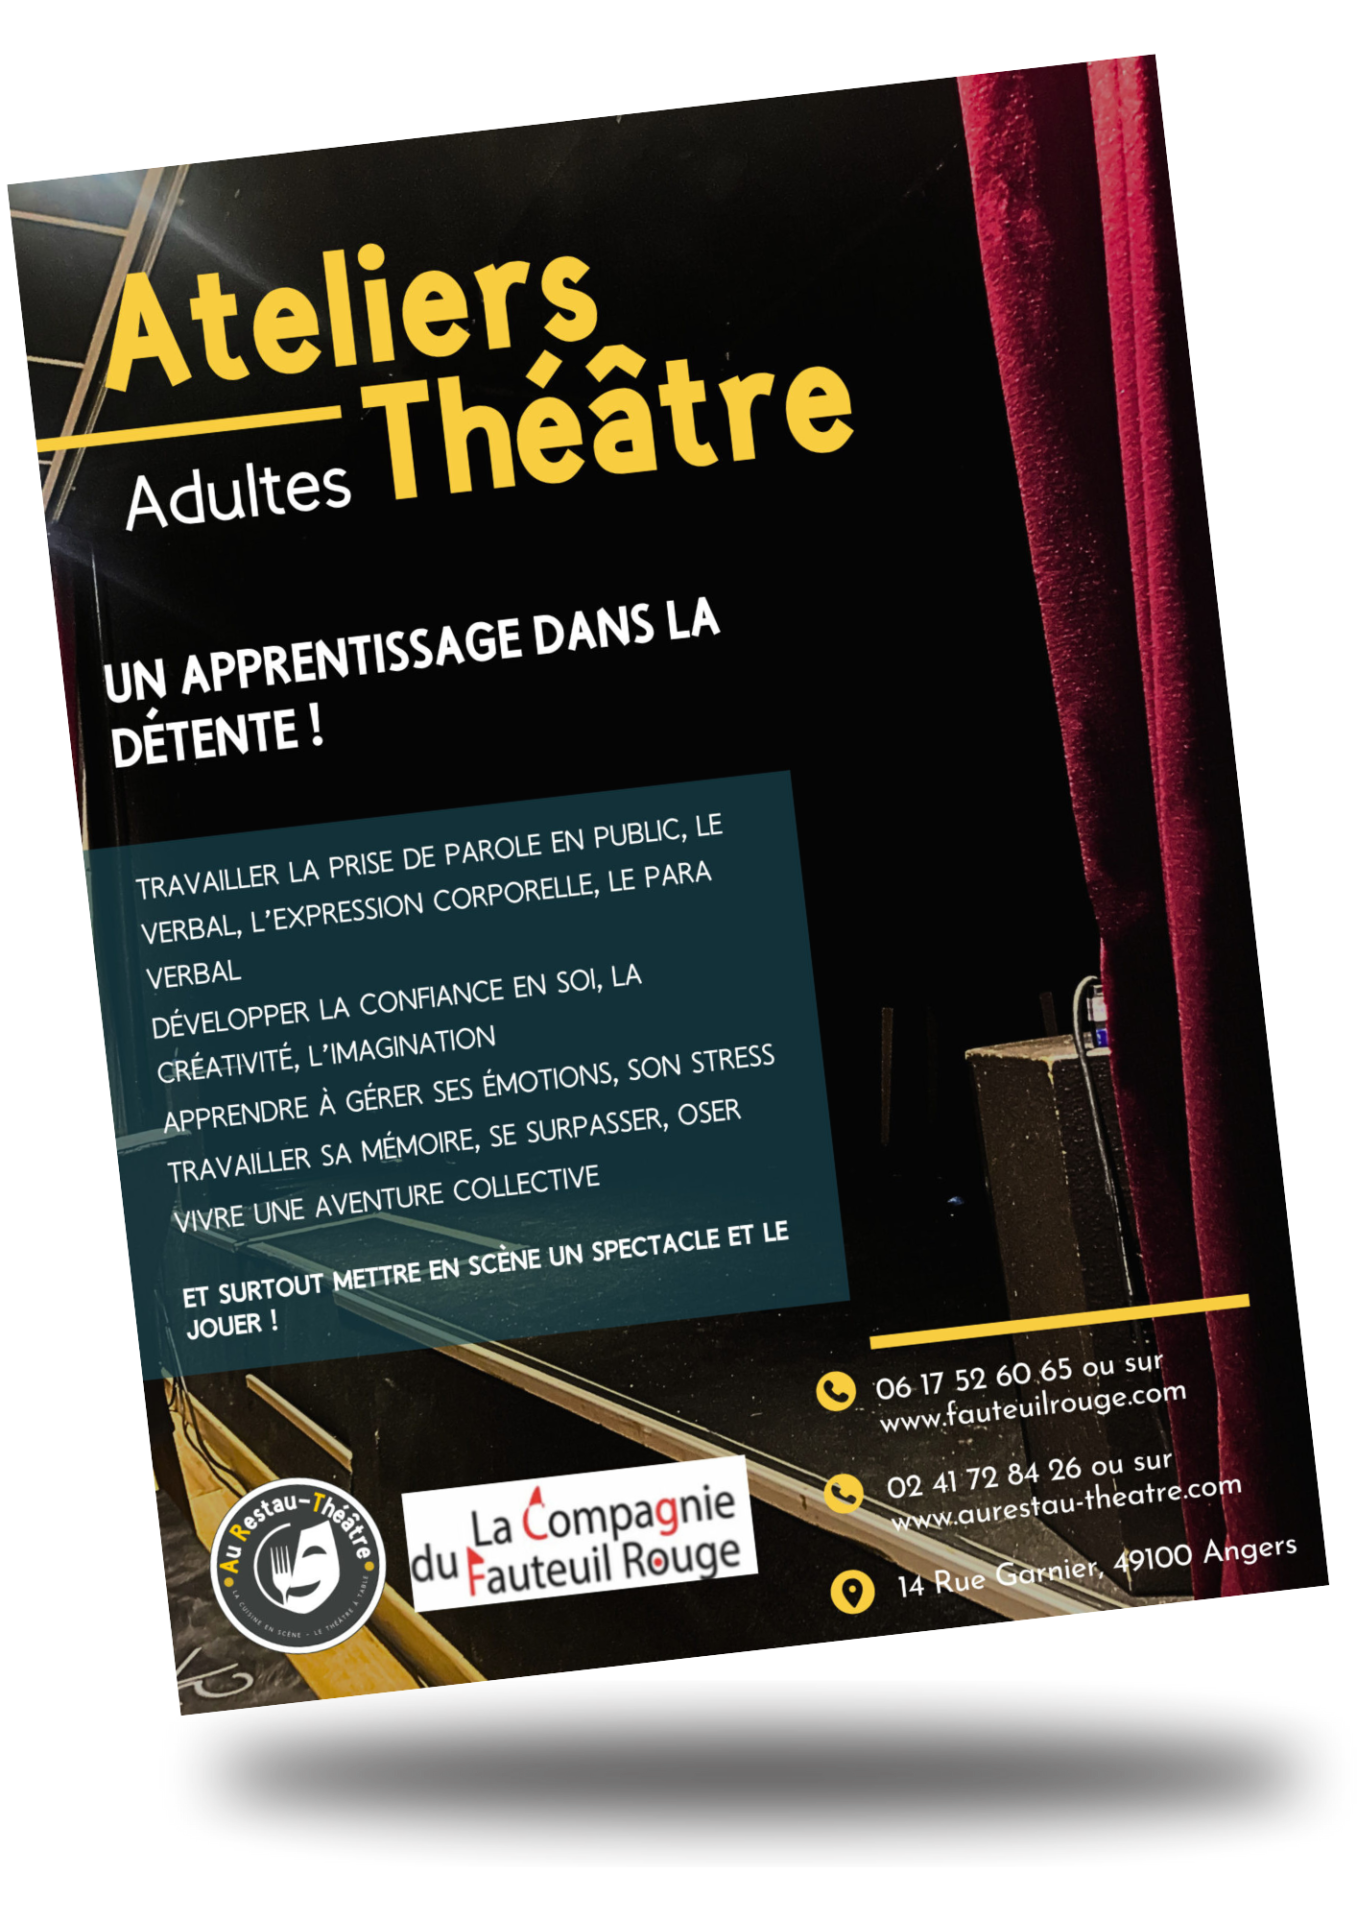 Affiche pour les Ateliers théâtre Adultes Au Restau-Théâtre à Angers avec la compagnie du fauteuil rouge. 